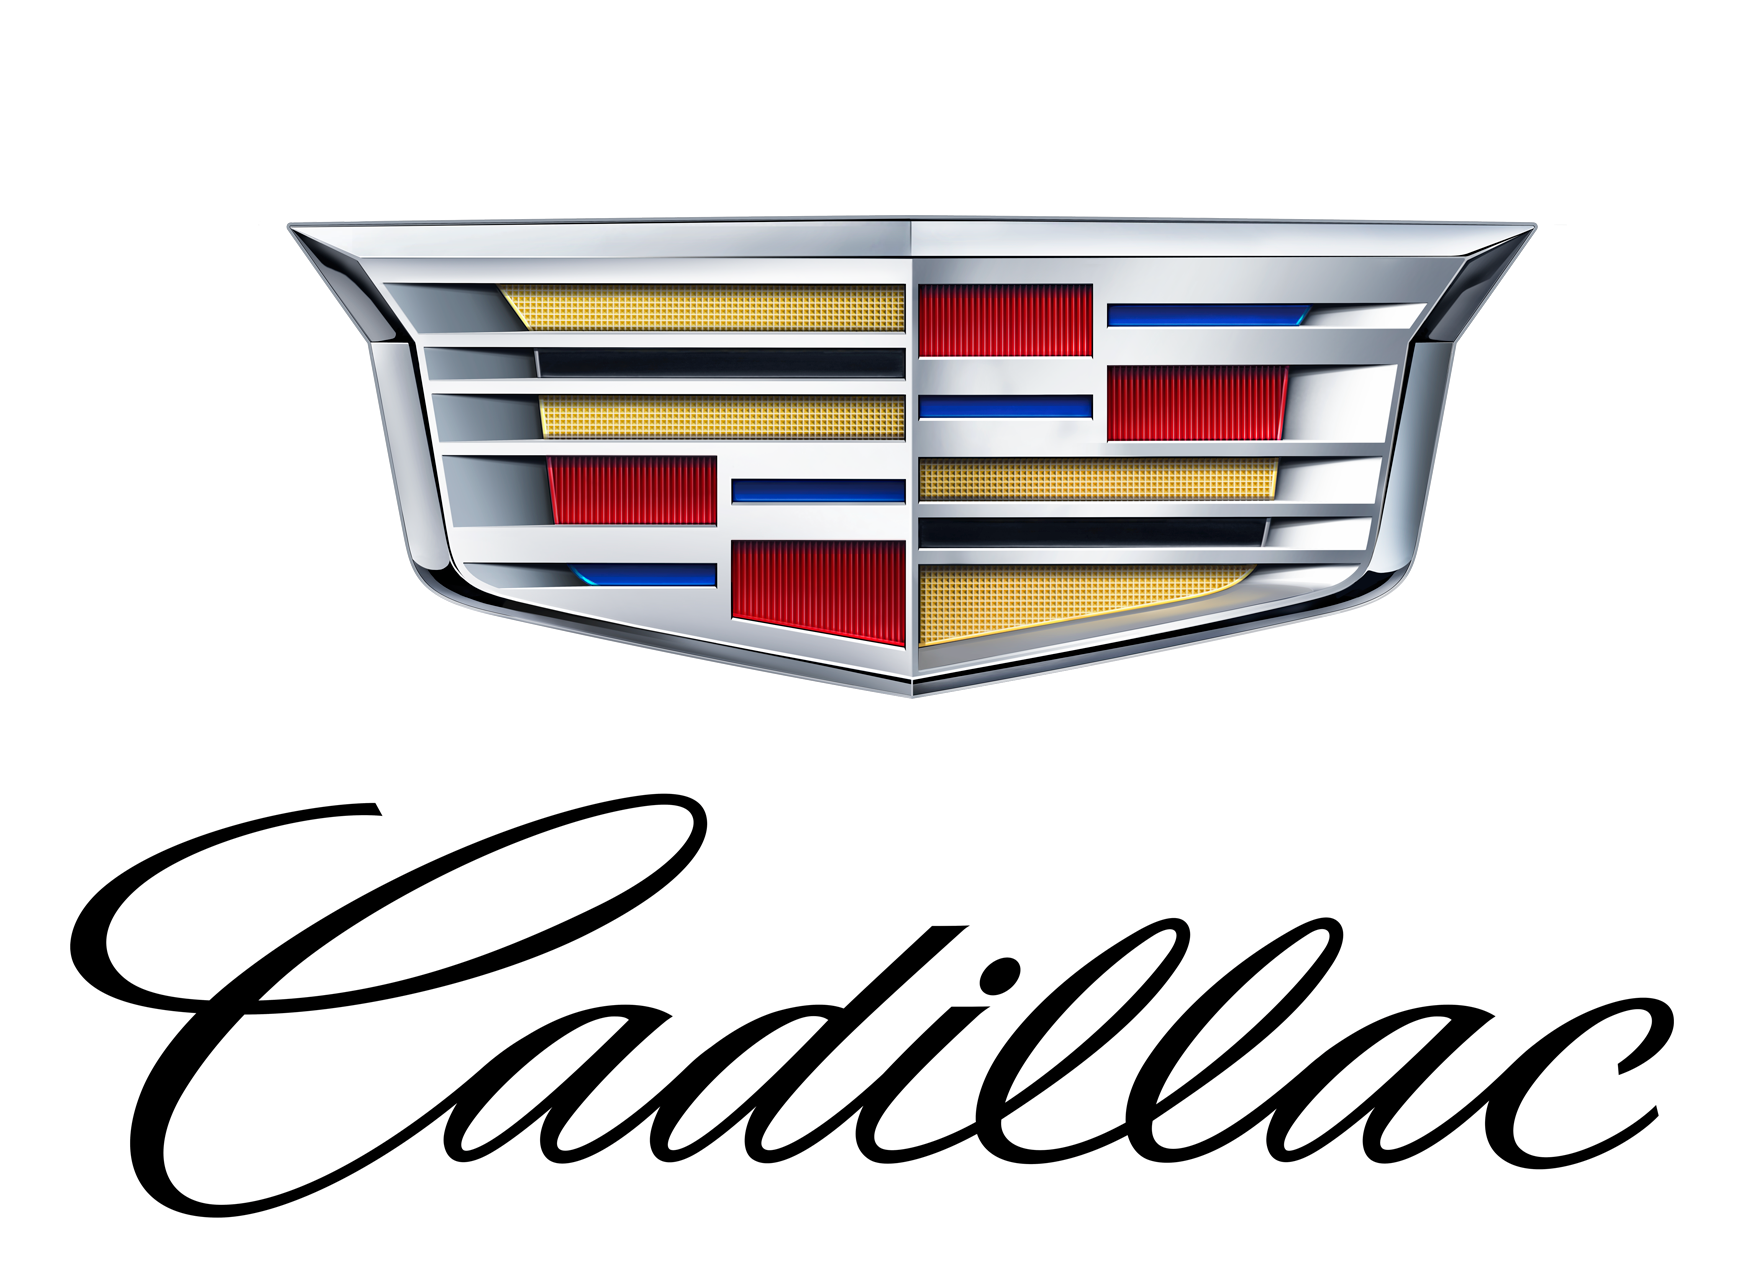 Cadillac-Logo-PNG-Image.png